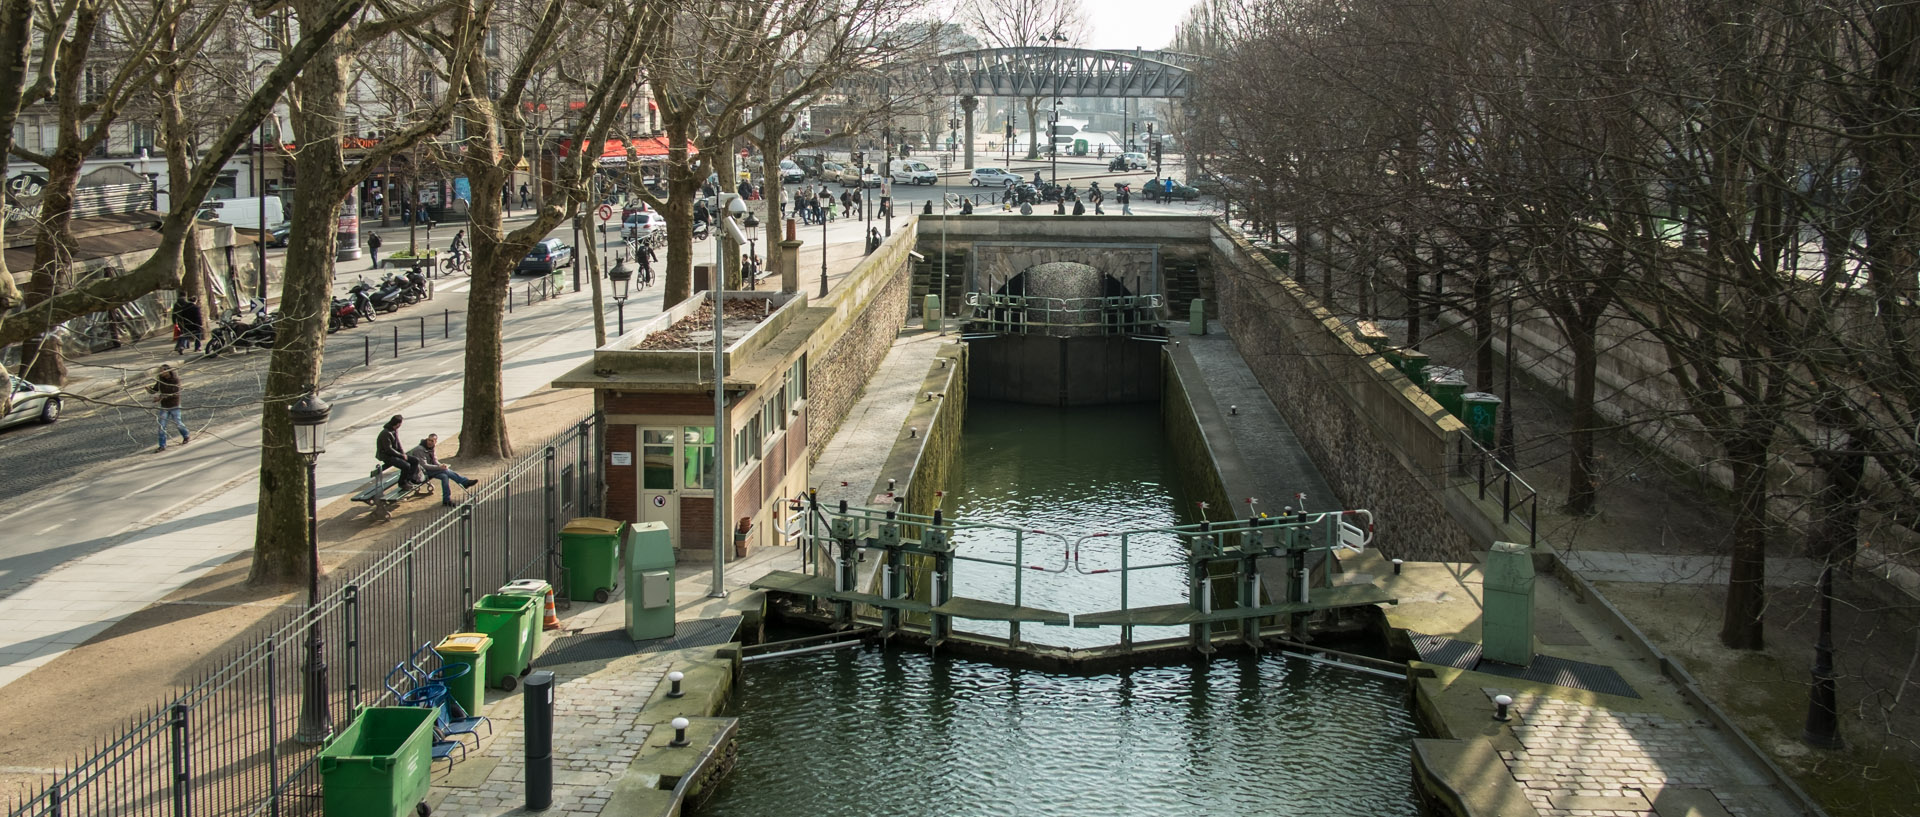 Ecluses sur le canal Saint-Martin, quai de la Loire, à Paris.